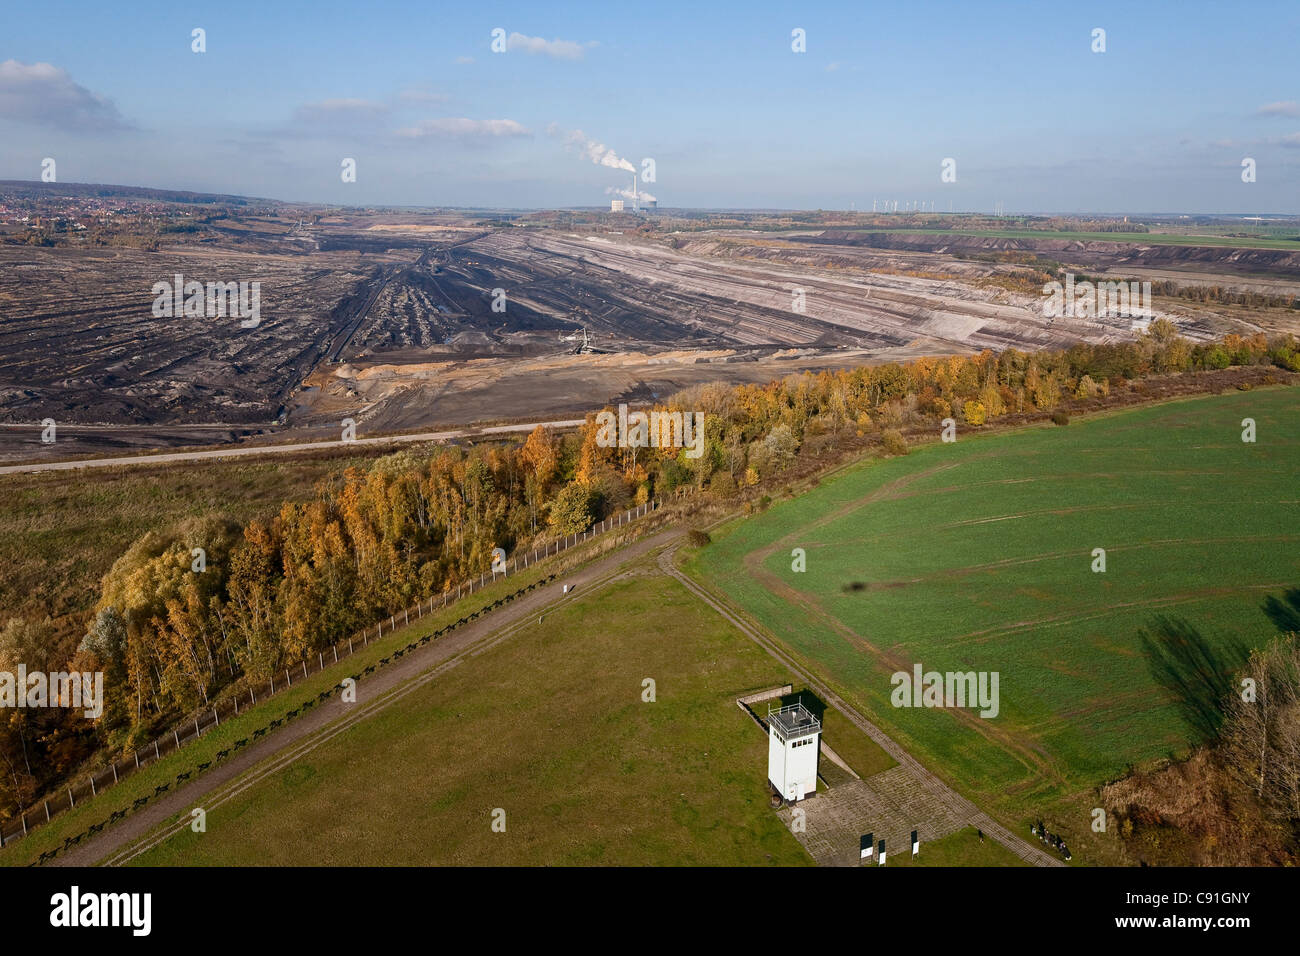 Vue aérienne de l'ancienne RDA Watch Tower à l'ancienne frontière et l'exploitation du lignite, Schoeningen, Basse-Saxe, Allemagne Banque D'Images